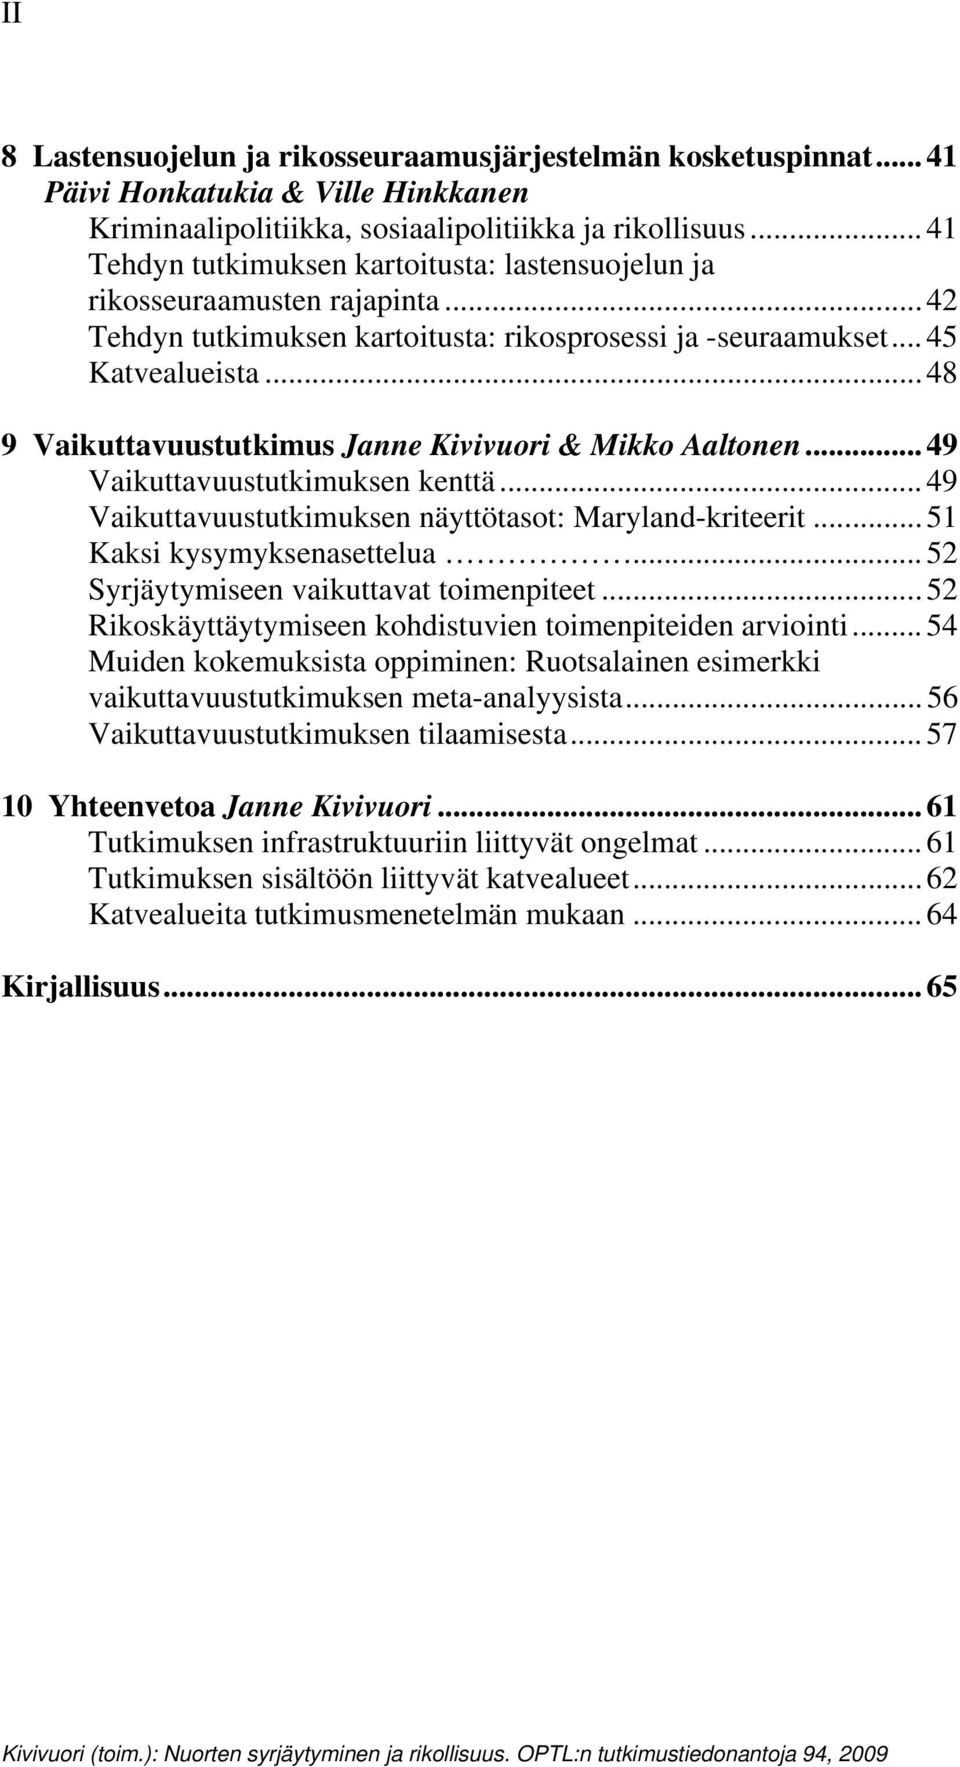 .. 48 9 Vaikuttavuustutkimus Janne Kivivuori & Mikko Aaltonen... 49 Vaikuttavuustutkimuksen kenttä... 49 Vaikuttavuustutkimuksen näyttötasot: Maryland-kriteerit... 51 Kaksi kysymyksenasettelua.